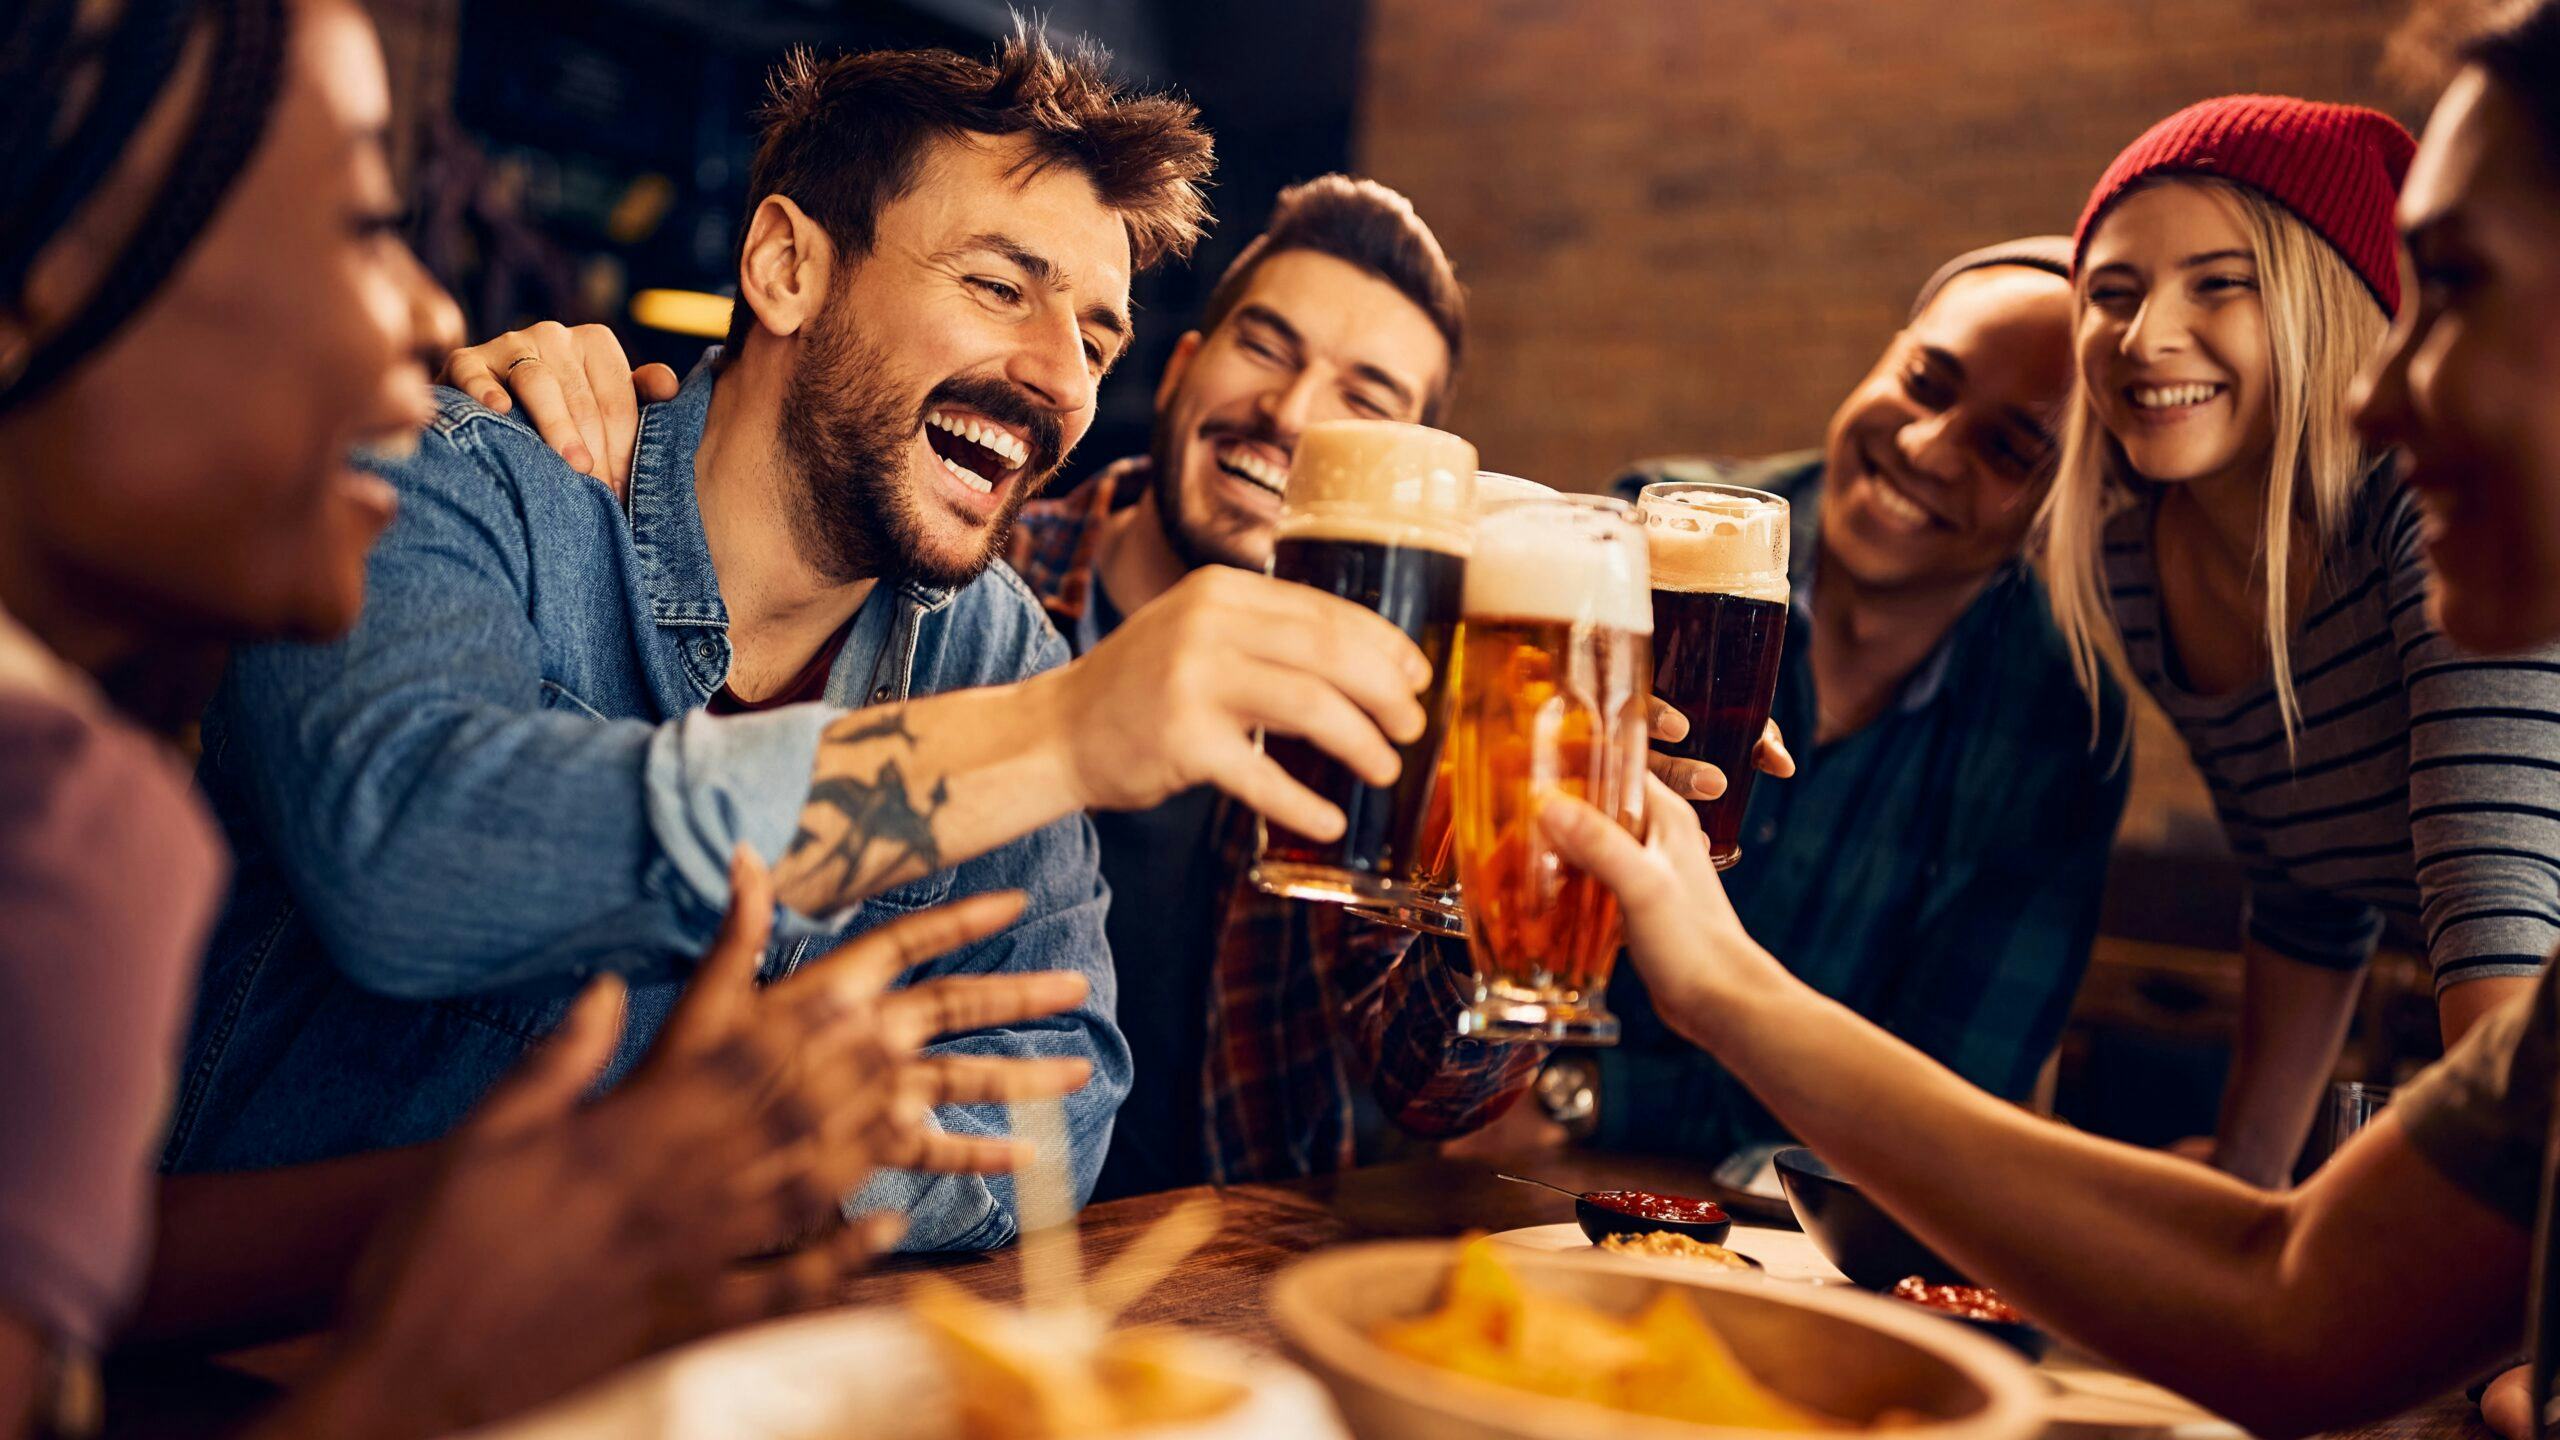 Bepaalt Untappd de bierselectie? 'Populaire bieren krijgen plaatsje op de bierkaart'